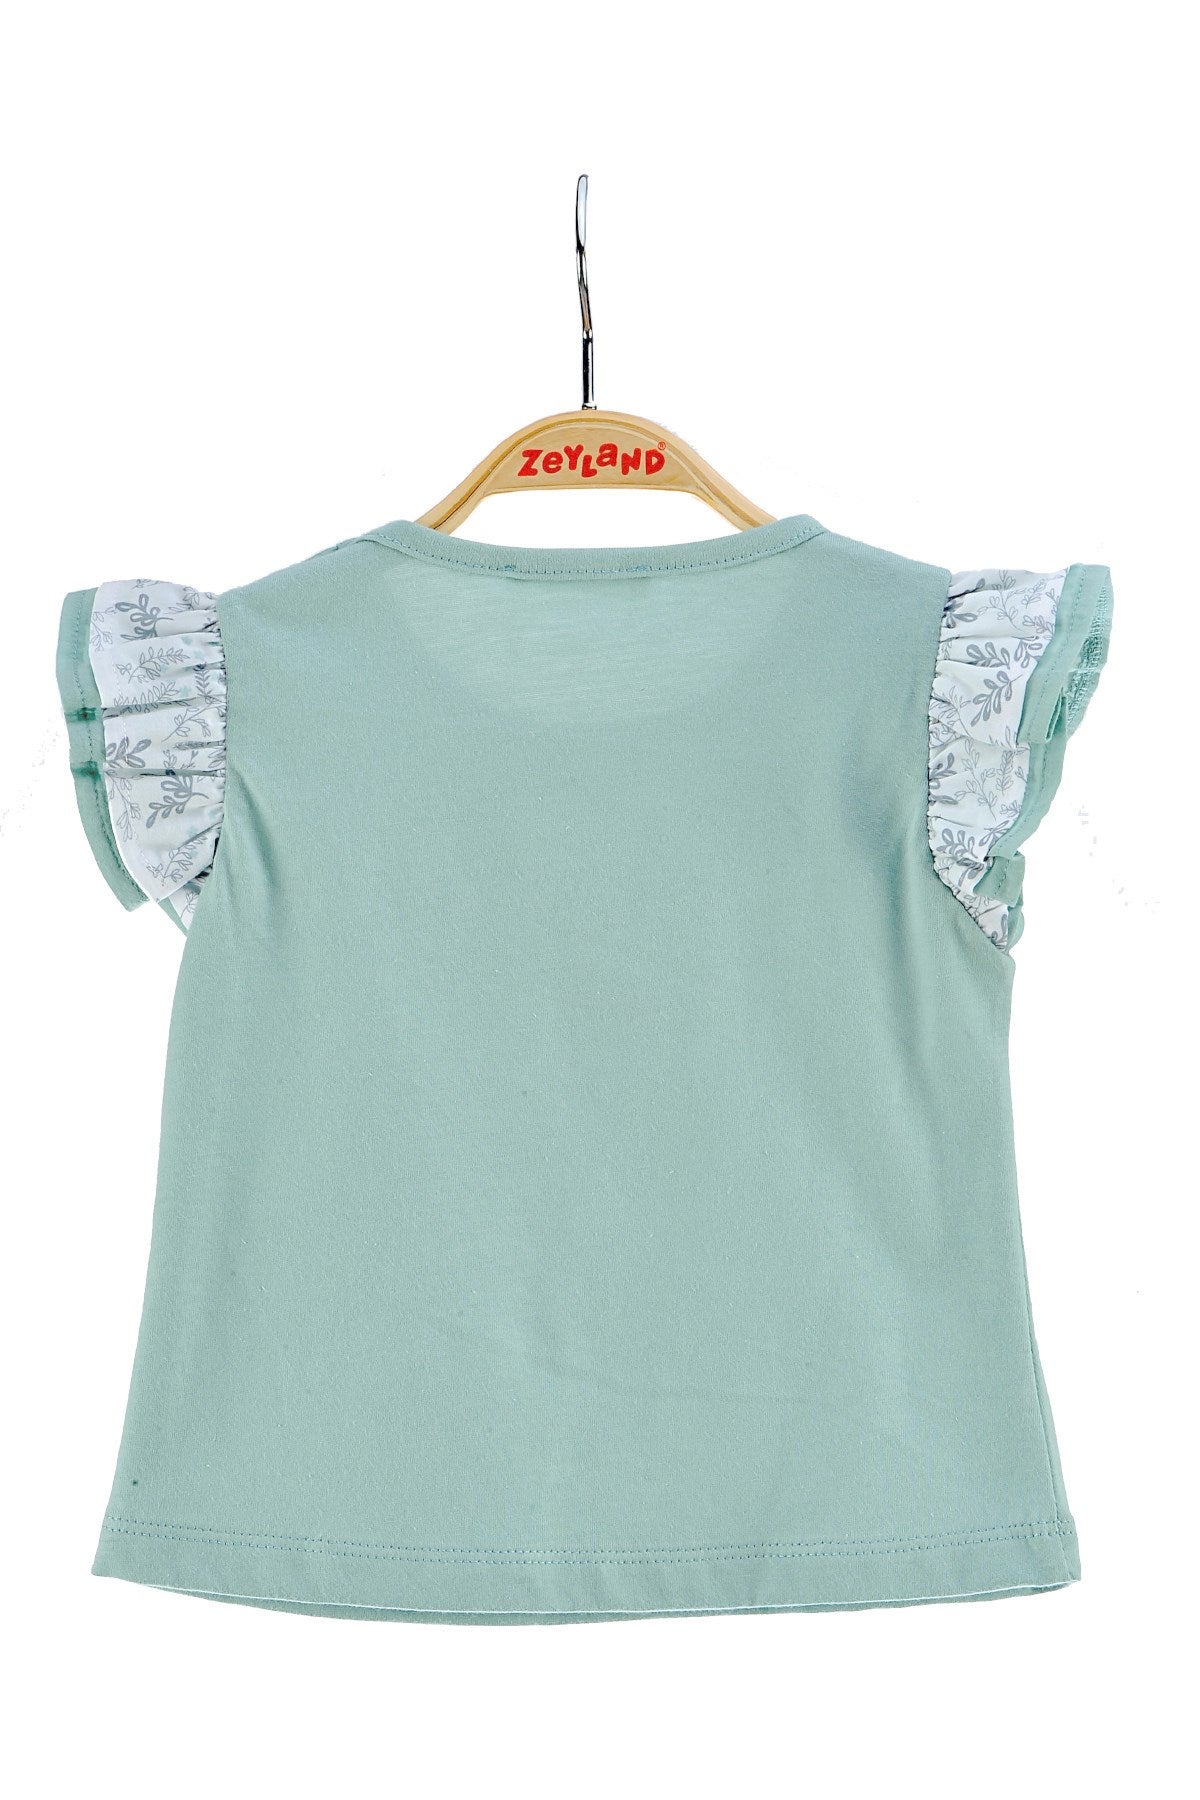 Kız Bebek Yeşil Fırfırlı Baskılı T-Shirt (6ay-4yaş)-1